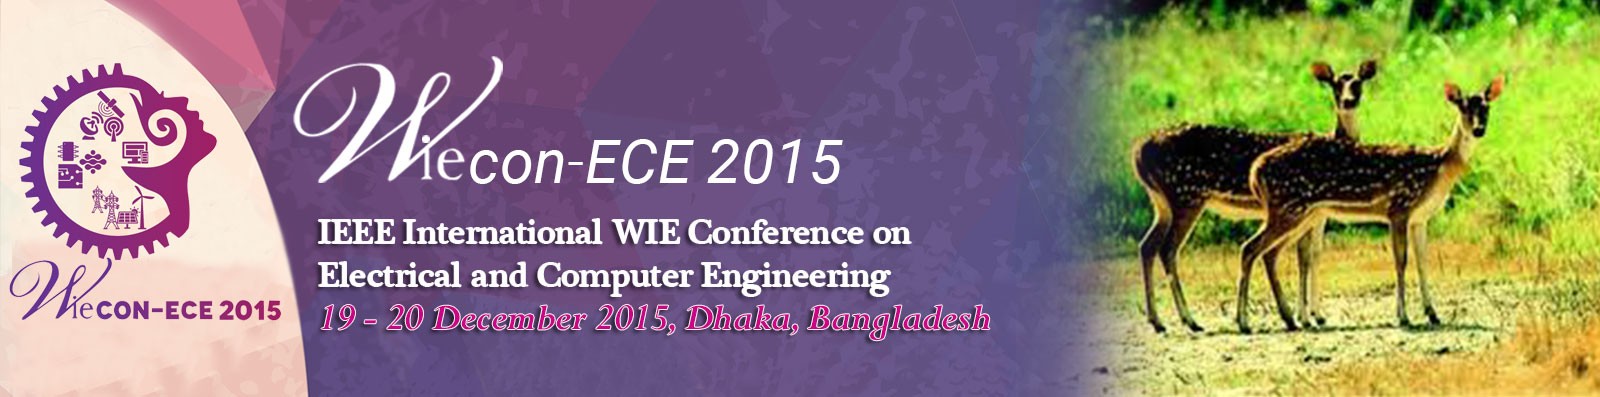 IEEE WIECON ECE 2015